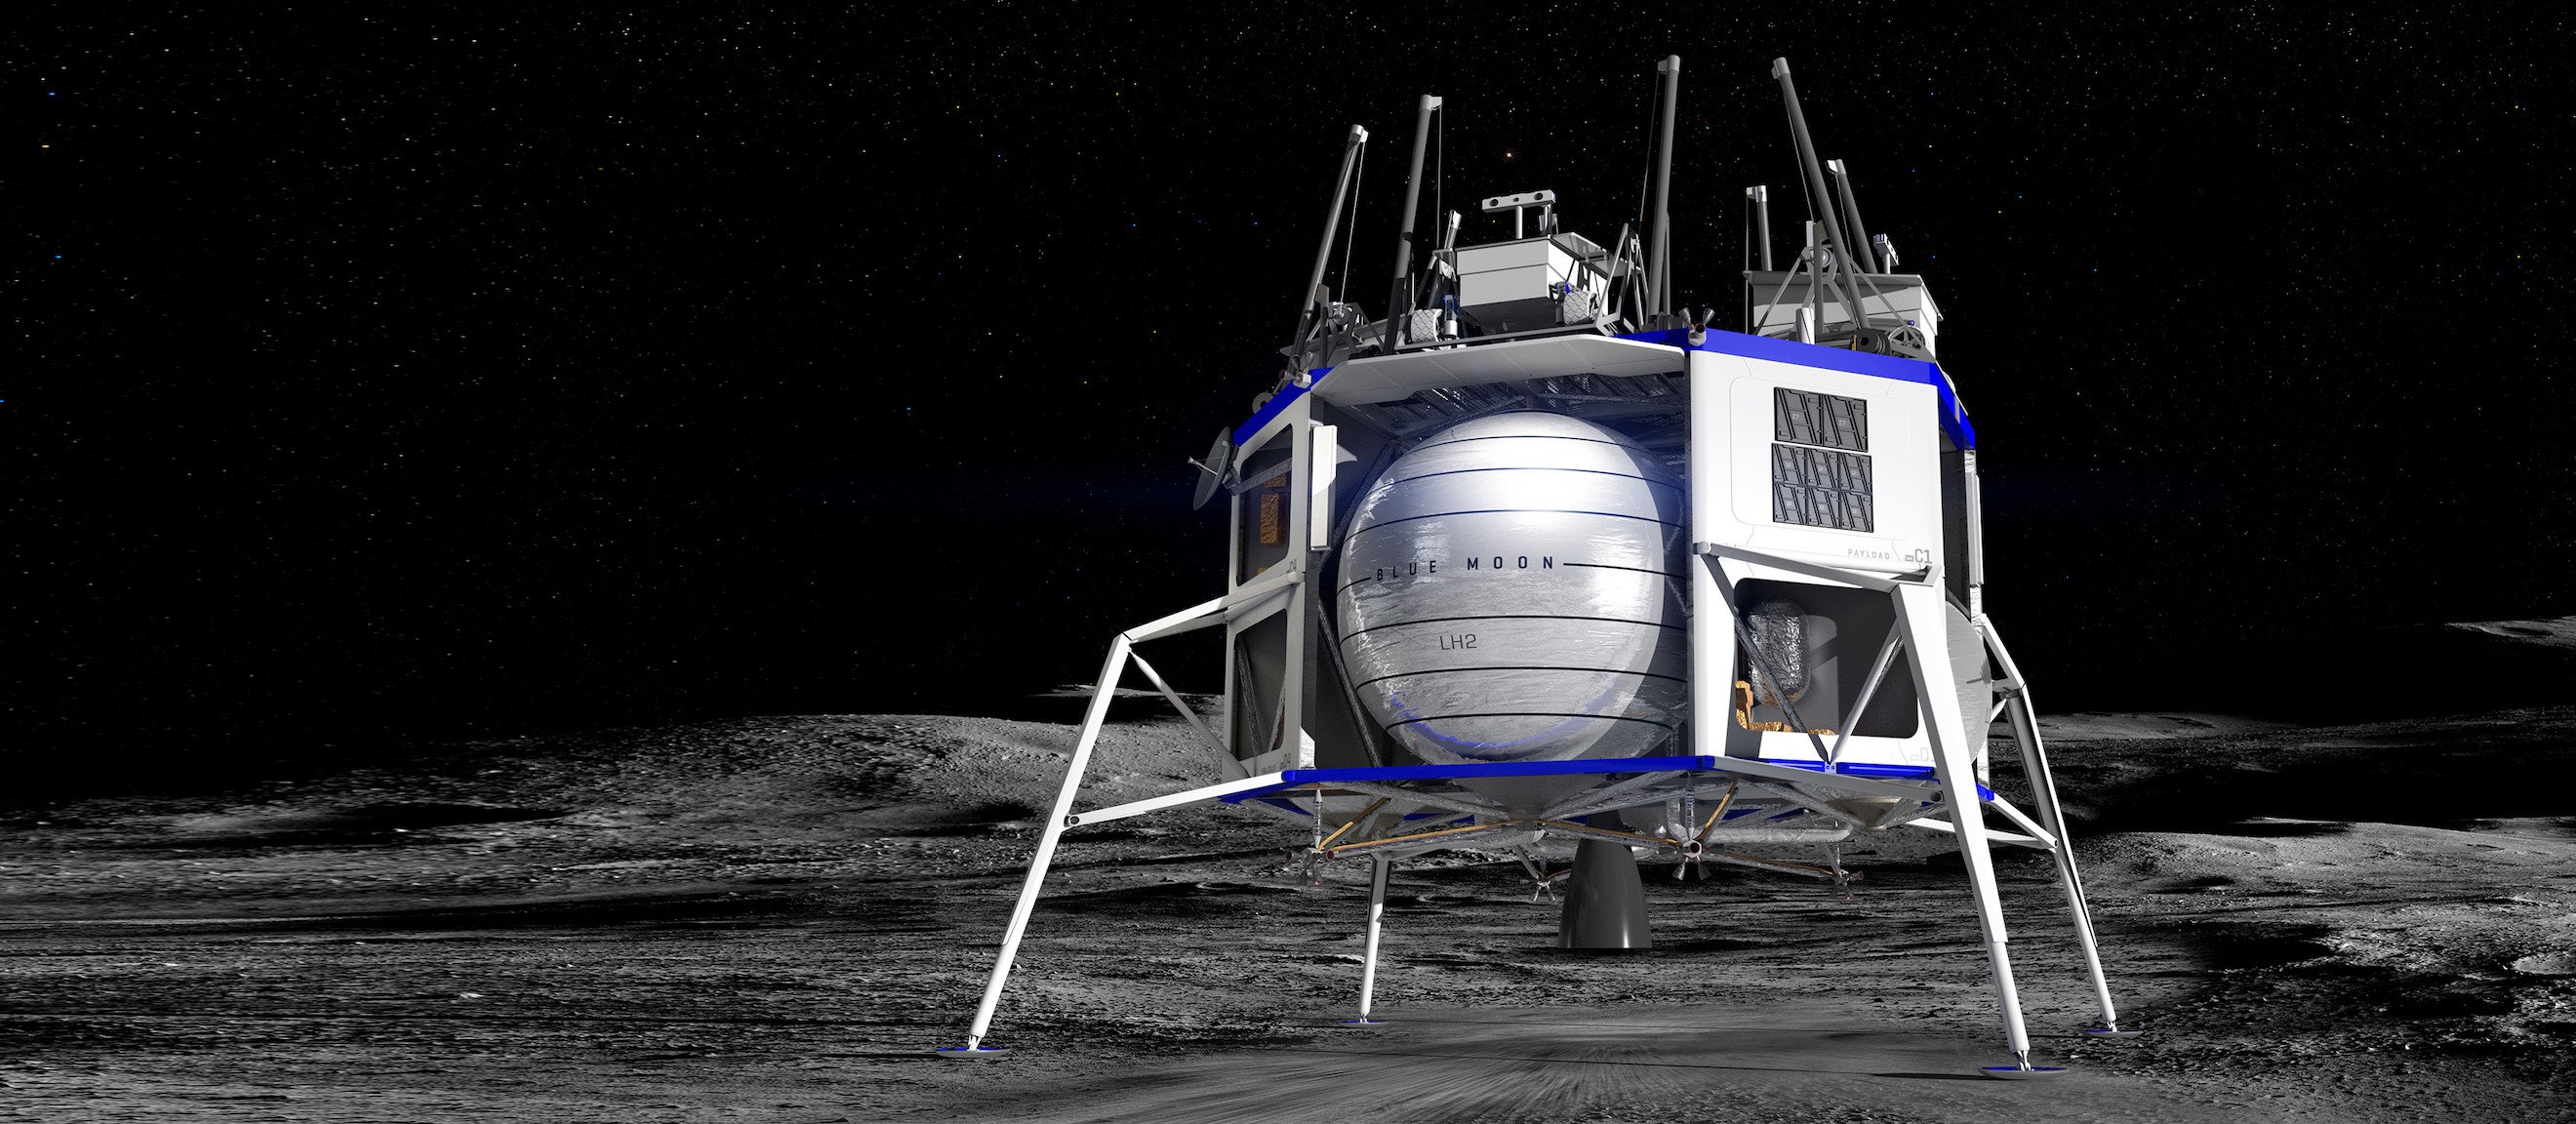 Veículo espacial Blue Moon, da Blue Origin, pode levar astronautas para a Lua (Foto: Divulgação/Blue Origin)